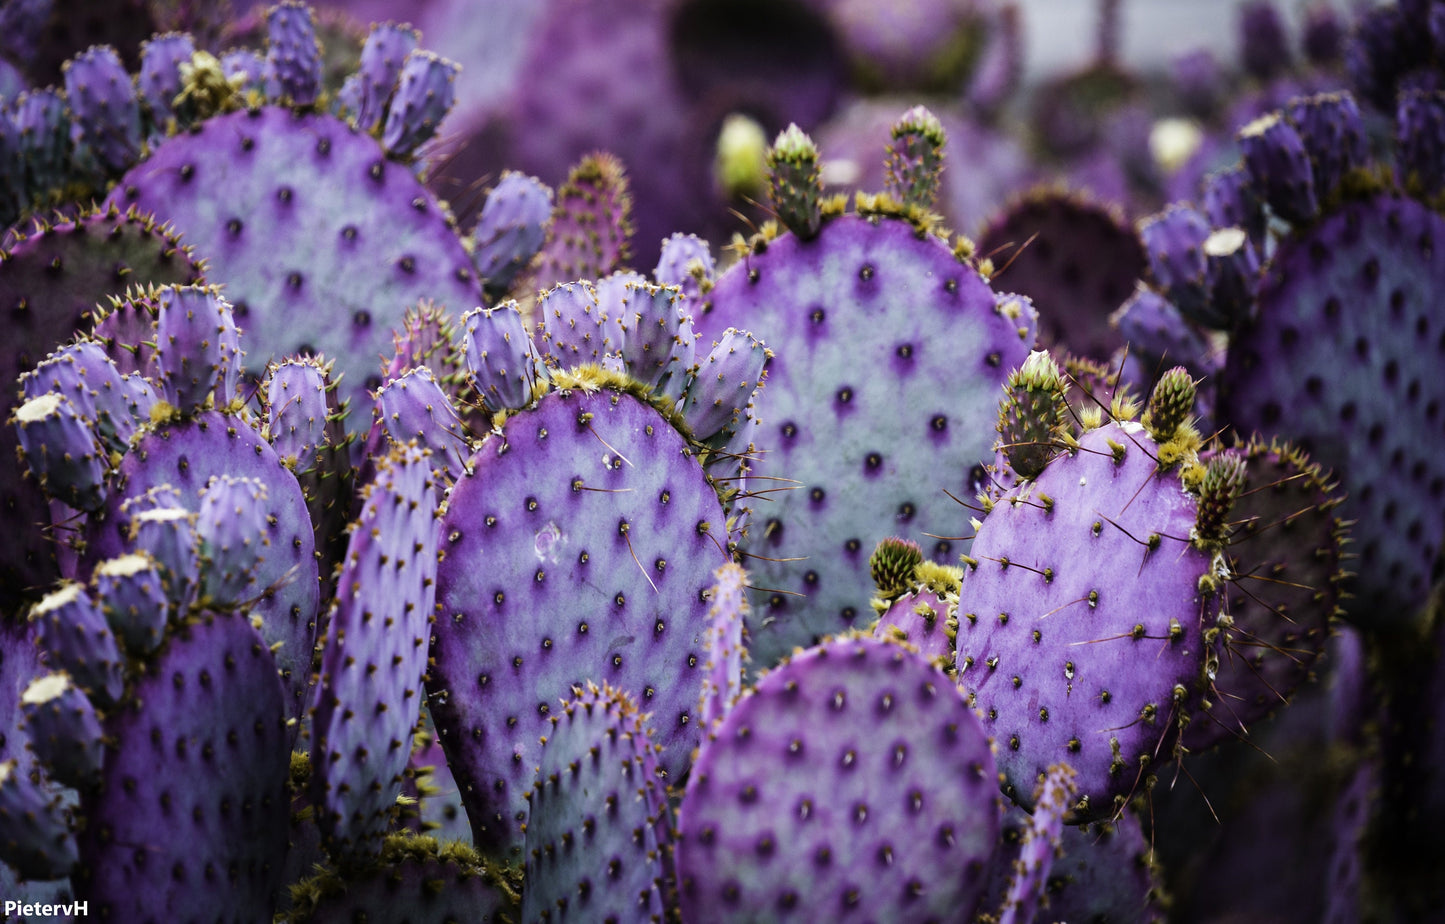 Opuntia Santarita - Santa Rita Purple Prickly Pear - Spectacular Cactus - 10 Seeds